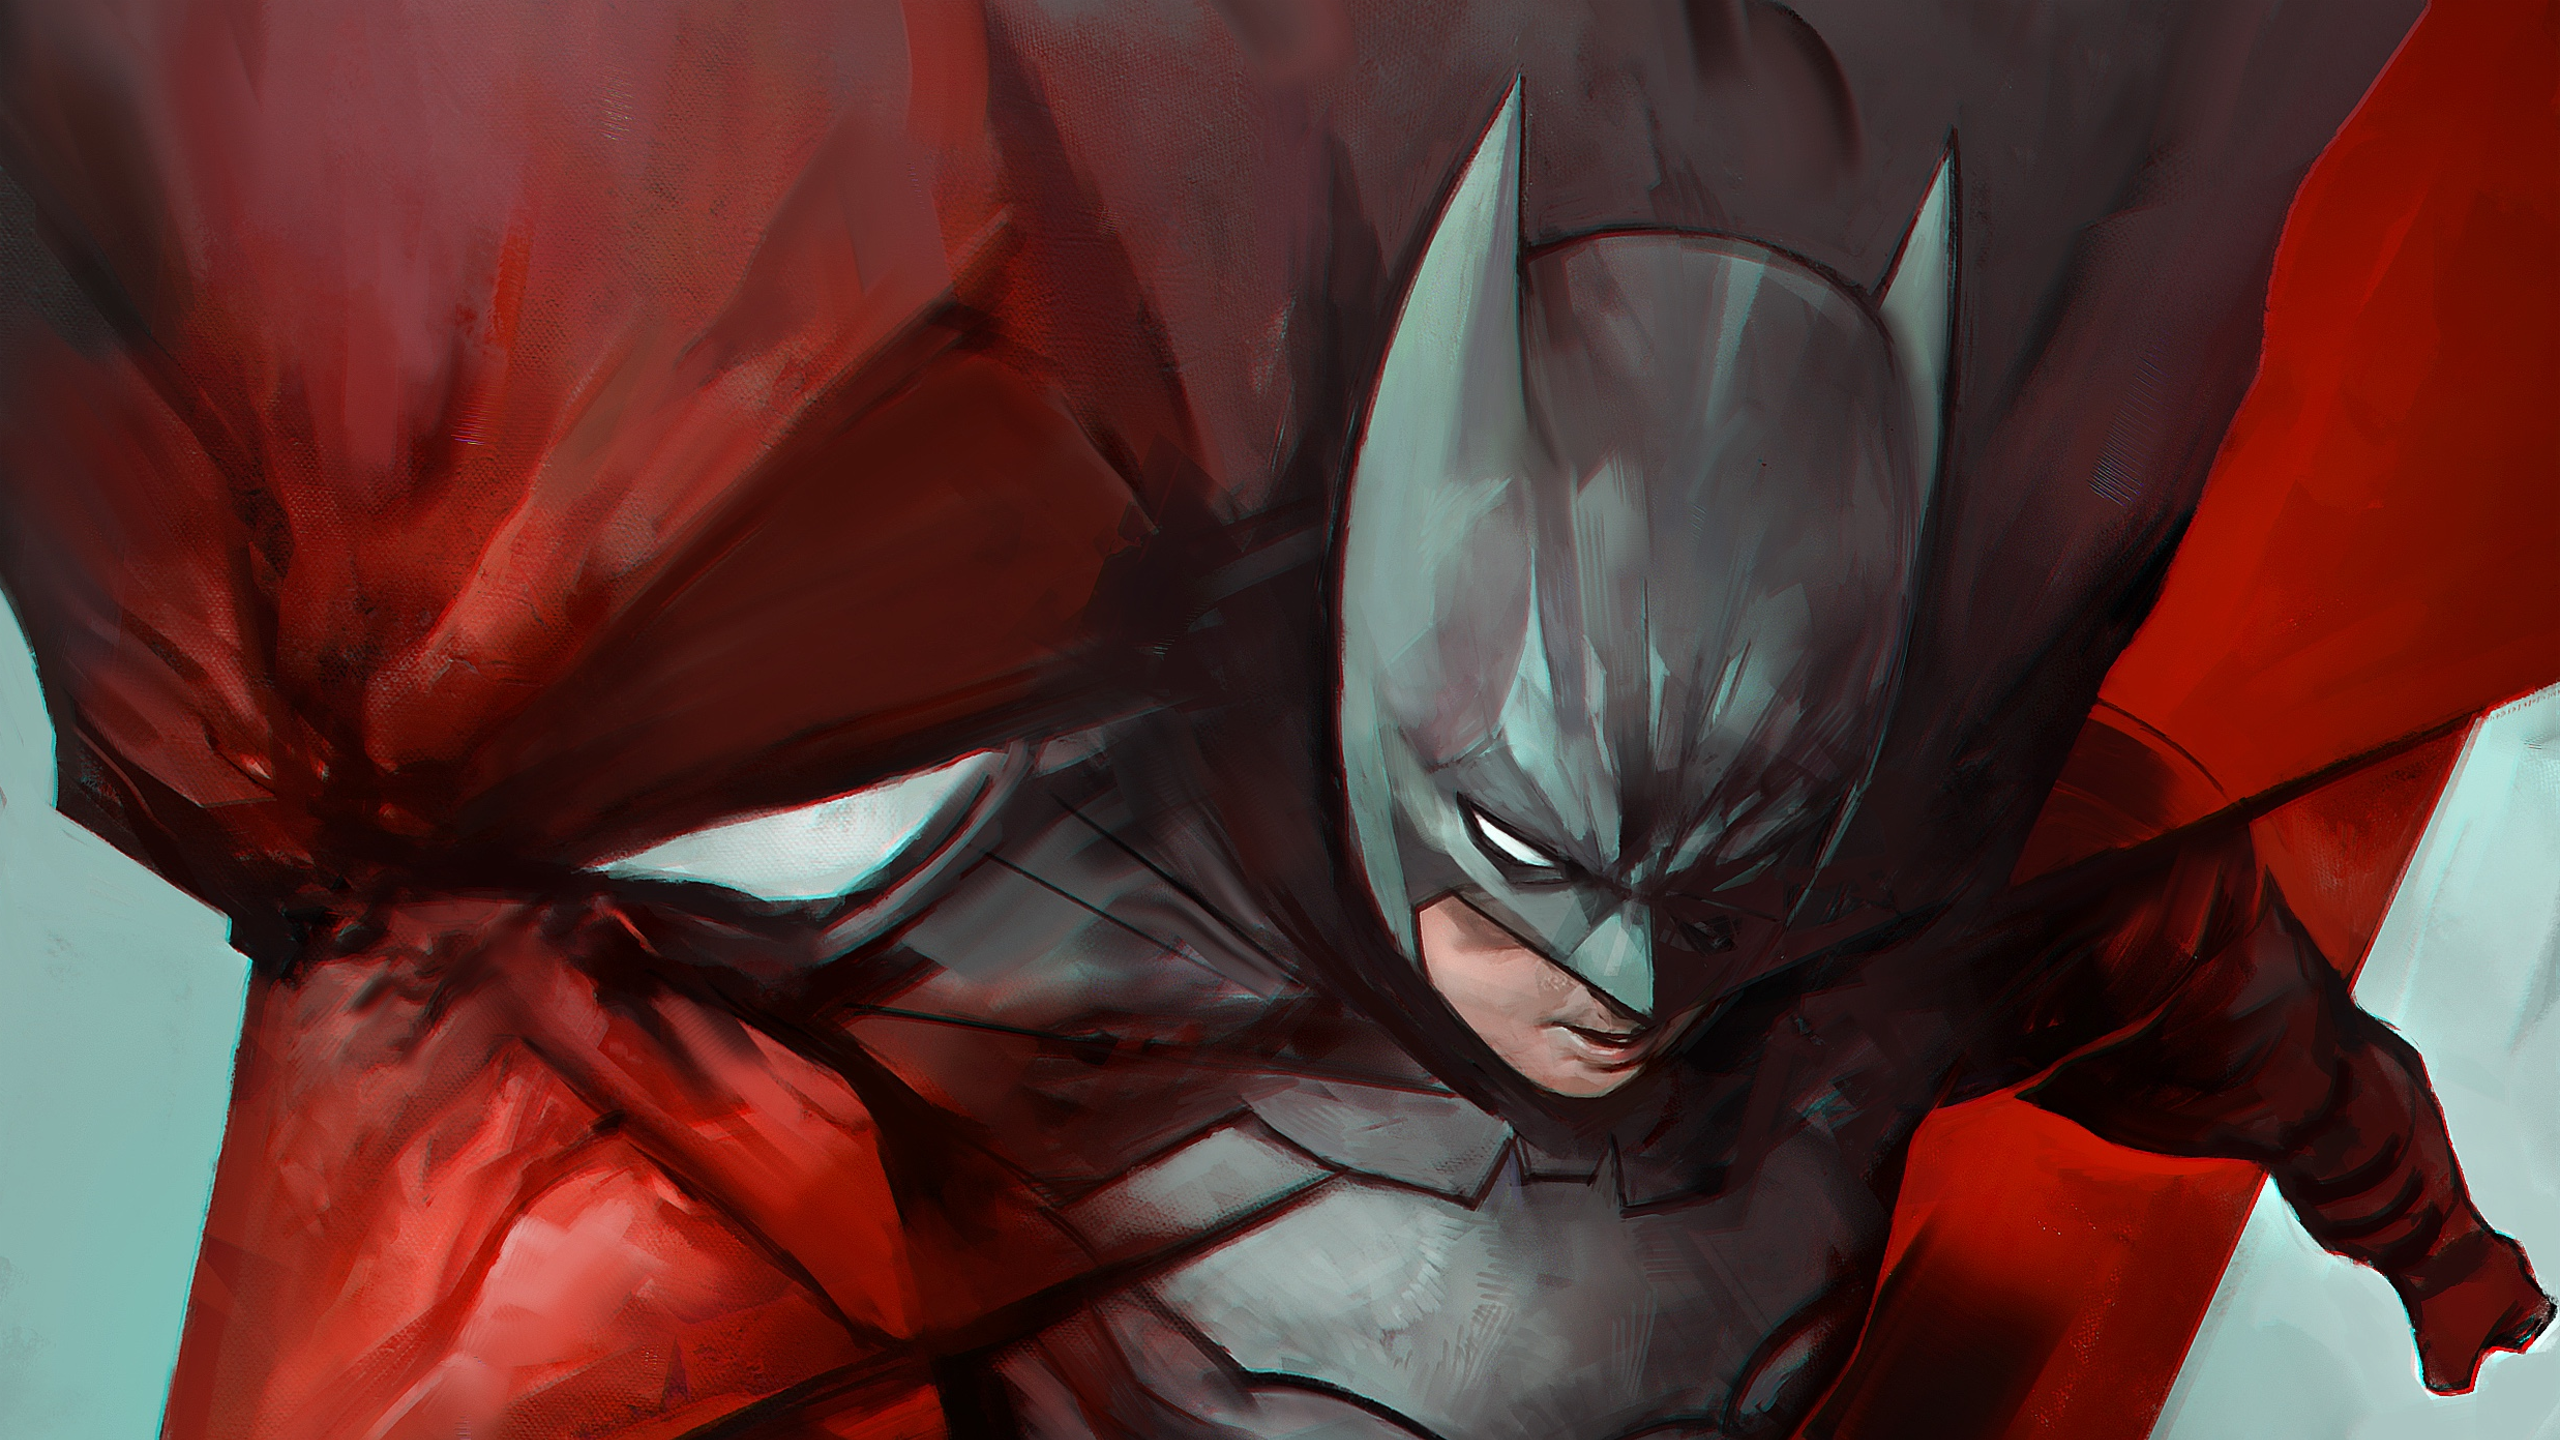 Digital Art Artwork Batman Dark Knight Trilogy Comics Movies 2560x1440